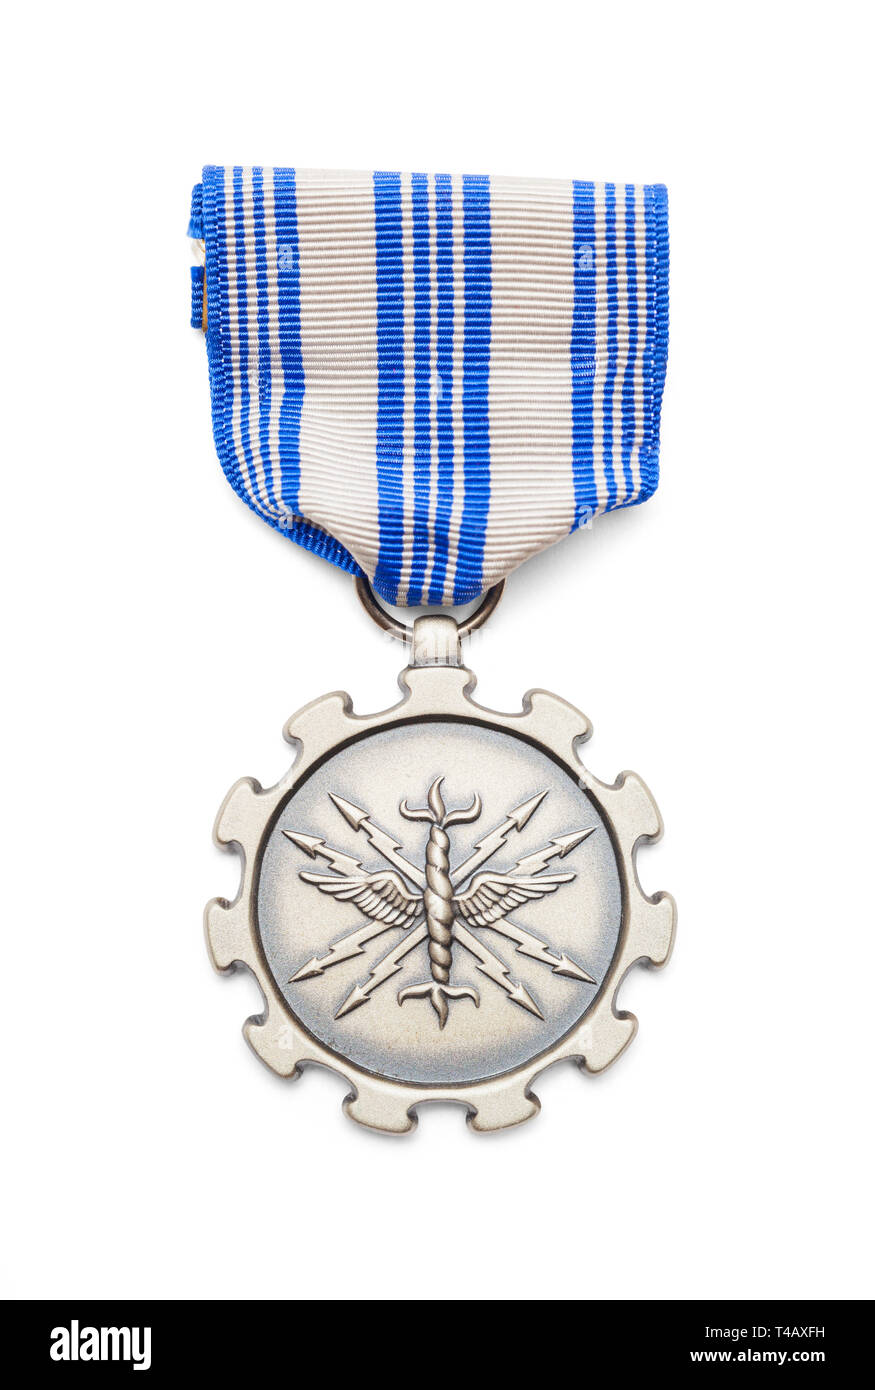 United States Air Force Achievement Medal schneiden Sie auf Weiß. Stockfoto